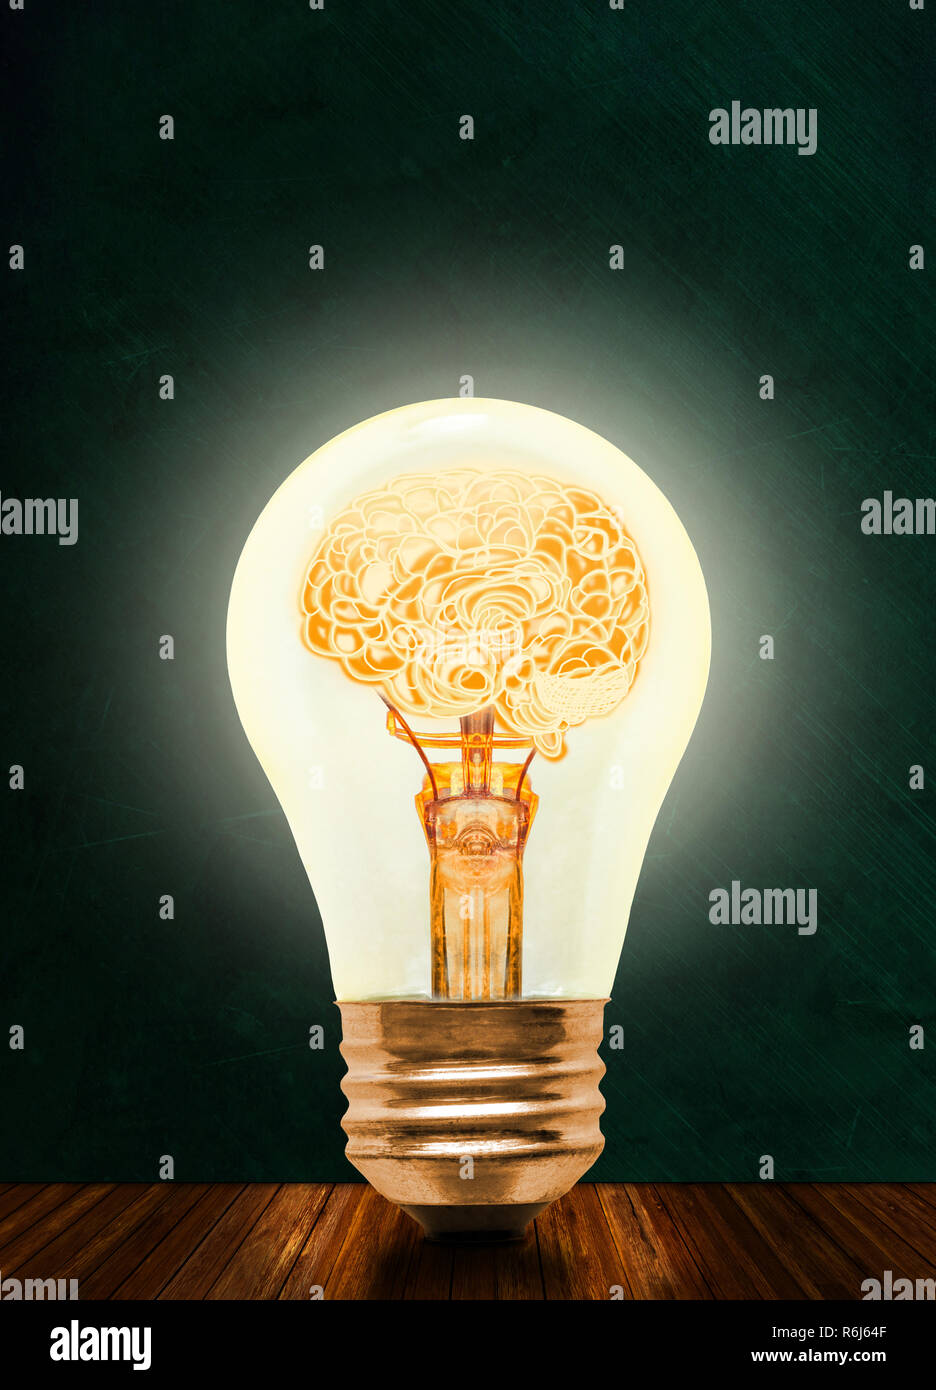 Anatomie d'un cerveau humain à l'intérieur lumineux allumé ampoule avec tableau noir et fond de l'espace de copie. Concept d'idée lumineuse, brainstorming, intel Banque D'Images